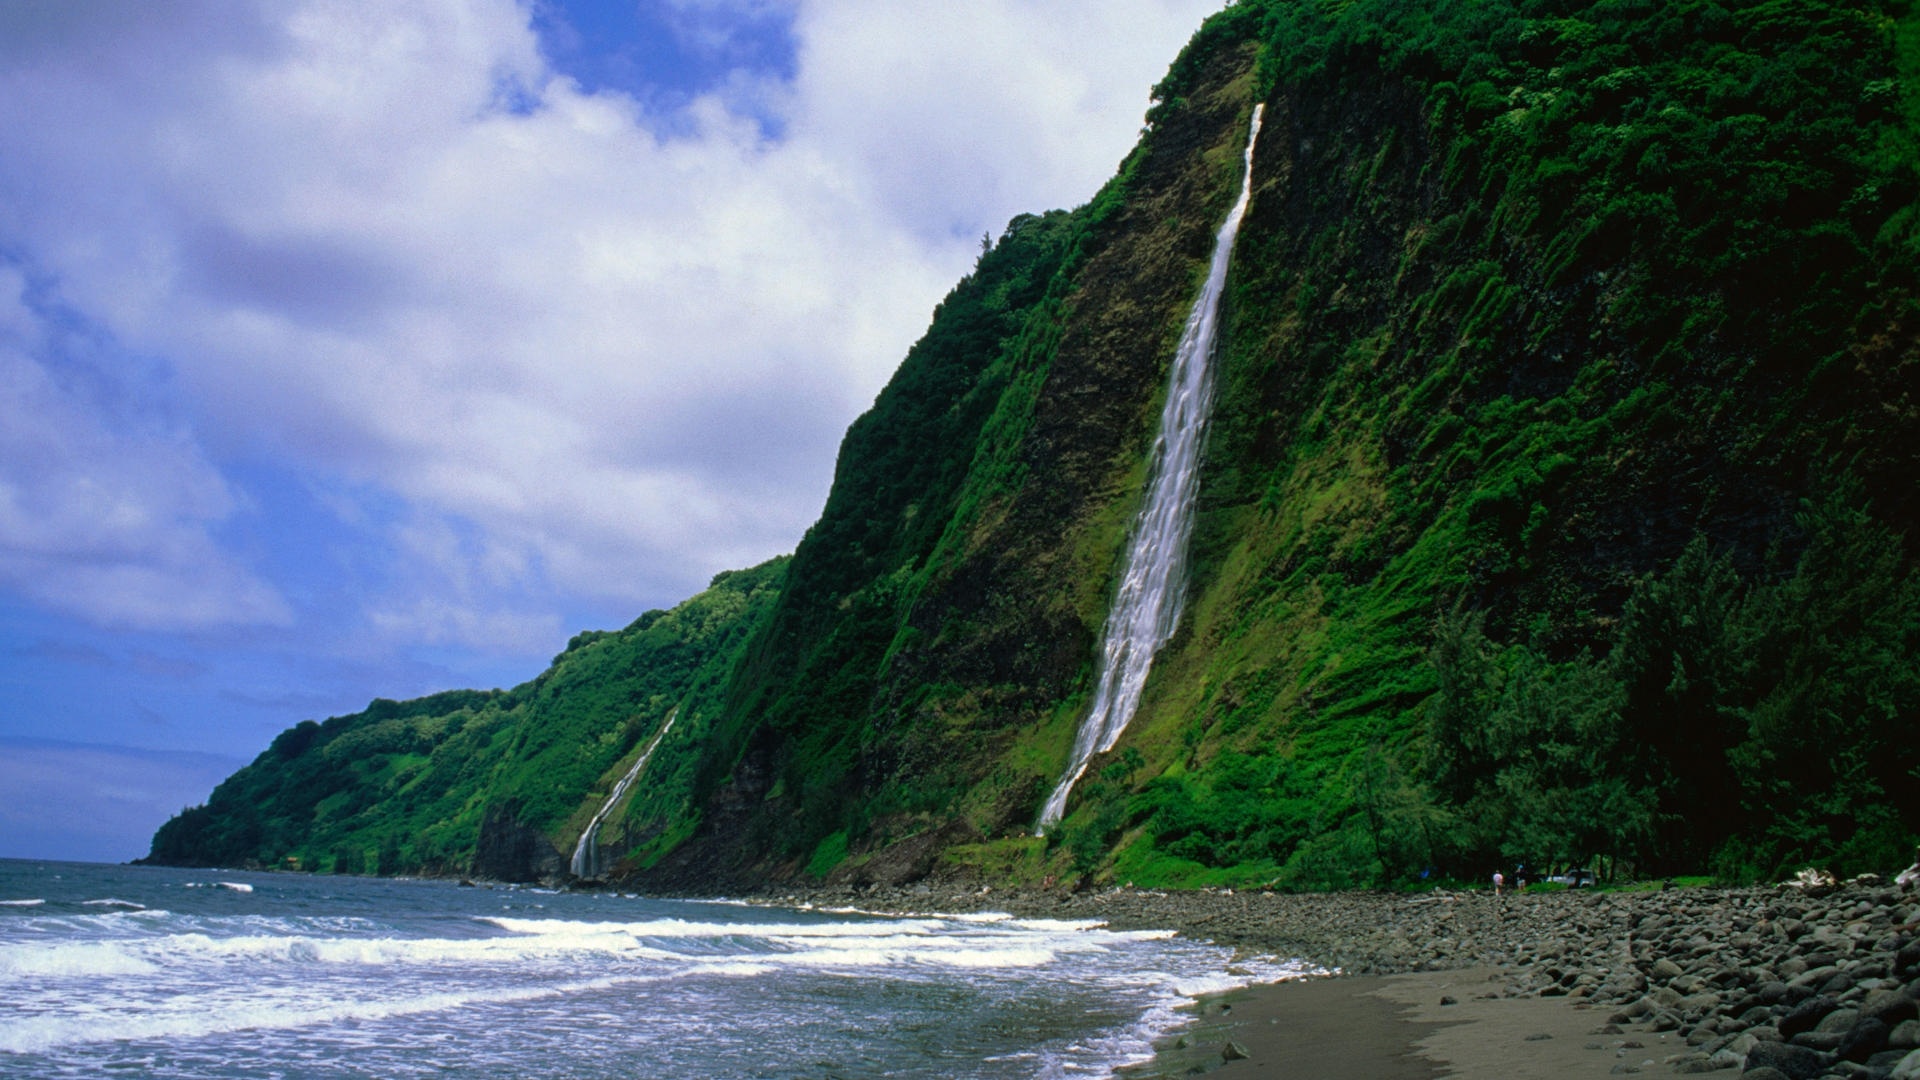 Kauai Mountain Image